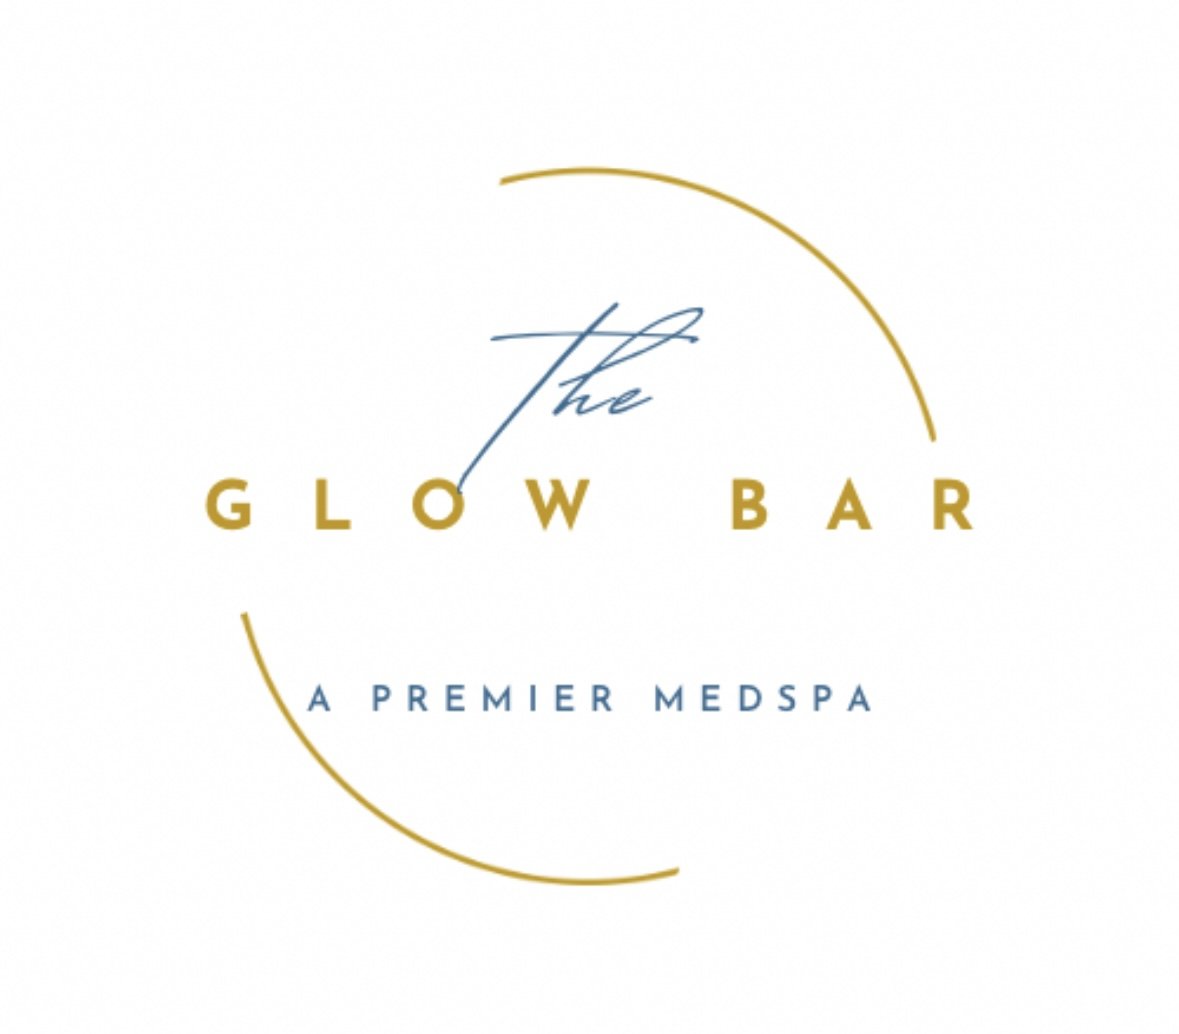 The Glow Bar: A Premier Medspa